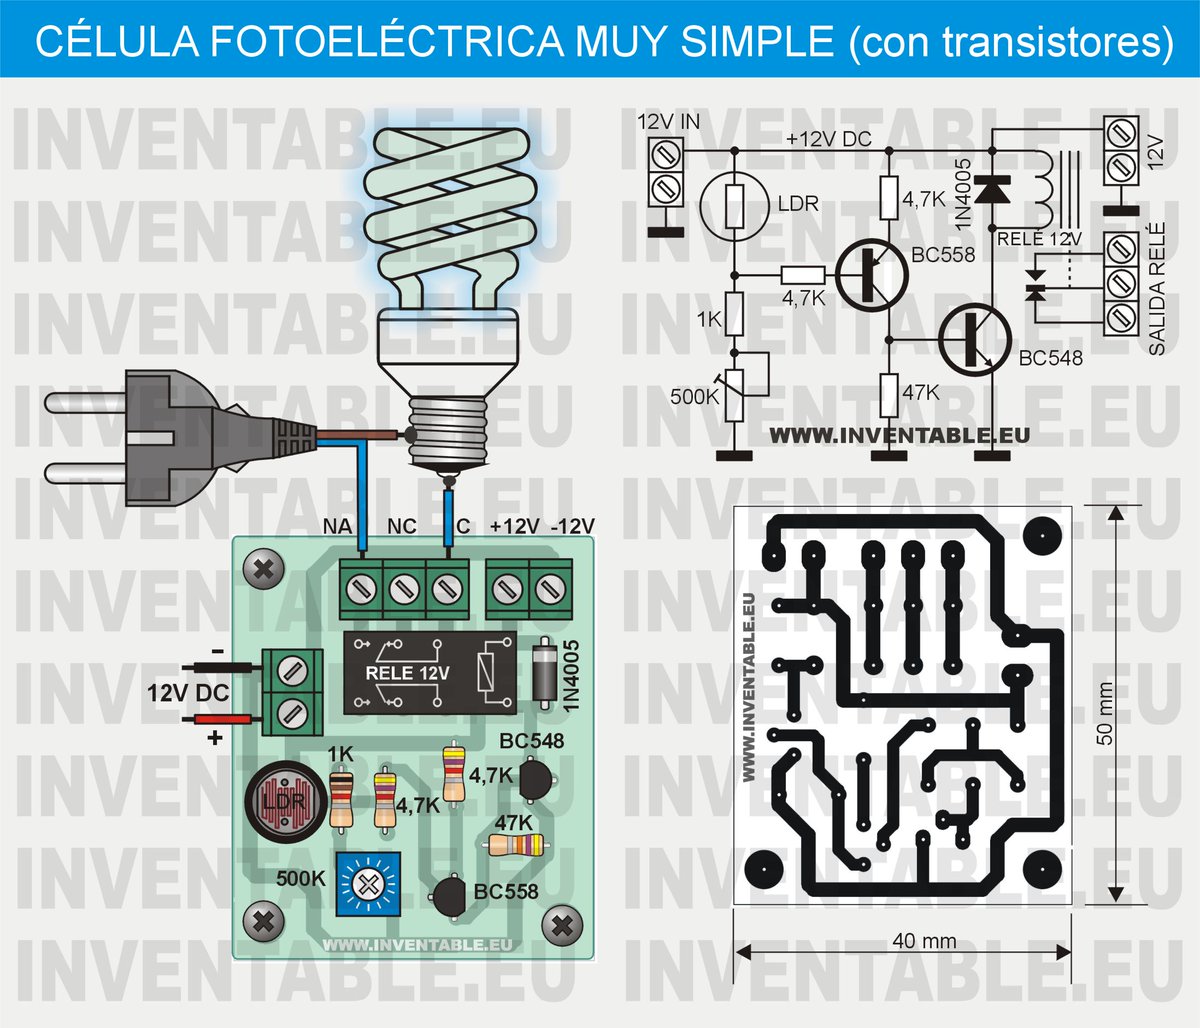 Célula fotoeléctrica muy simple con regulación de umbral y salida relé. 

Fuente: inventable.eu/2013/04/29/cel…

#fotocélula #circuitosútiles #automatismos #transistores #relé #célulafotoeléctrica